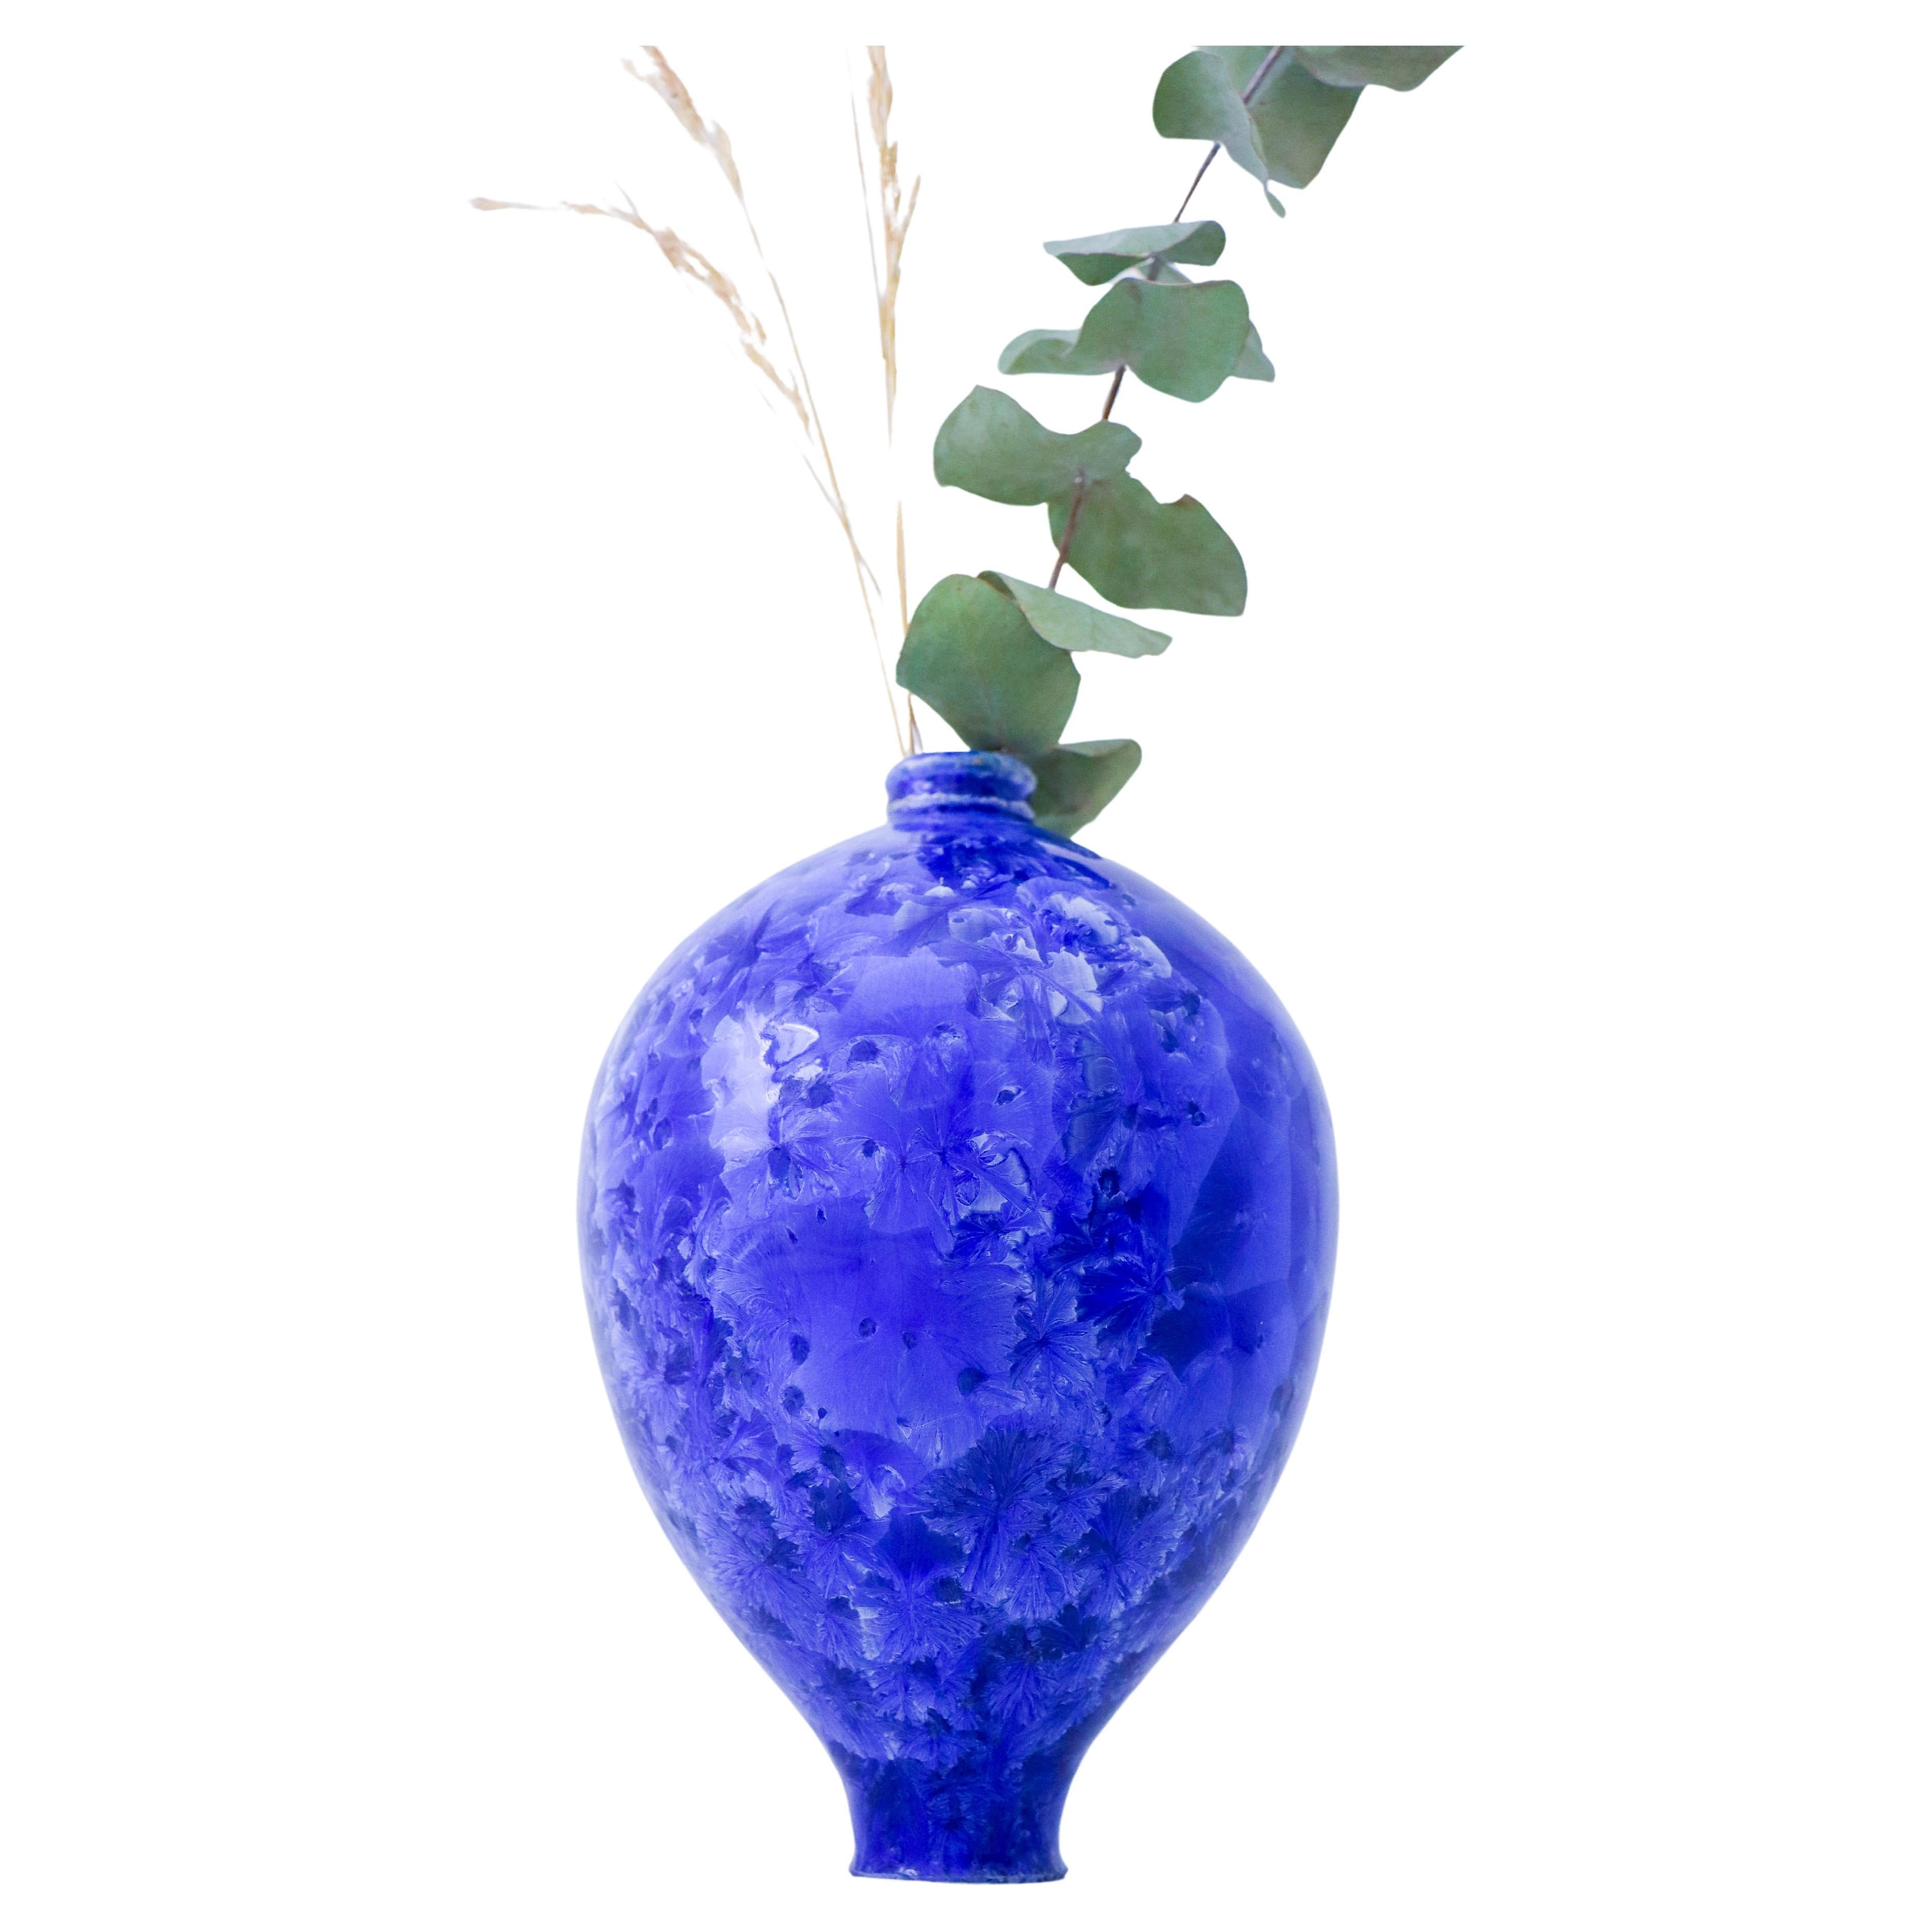 Isak Isaksson - Blaue Keramikvase - kristalline Glasur - Zeitgenössischer Künstler